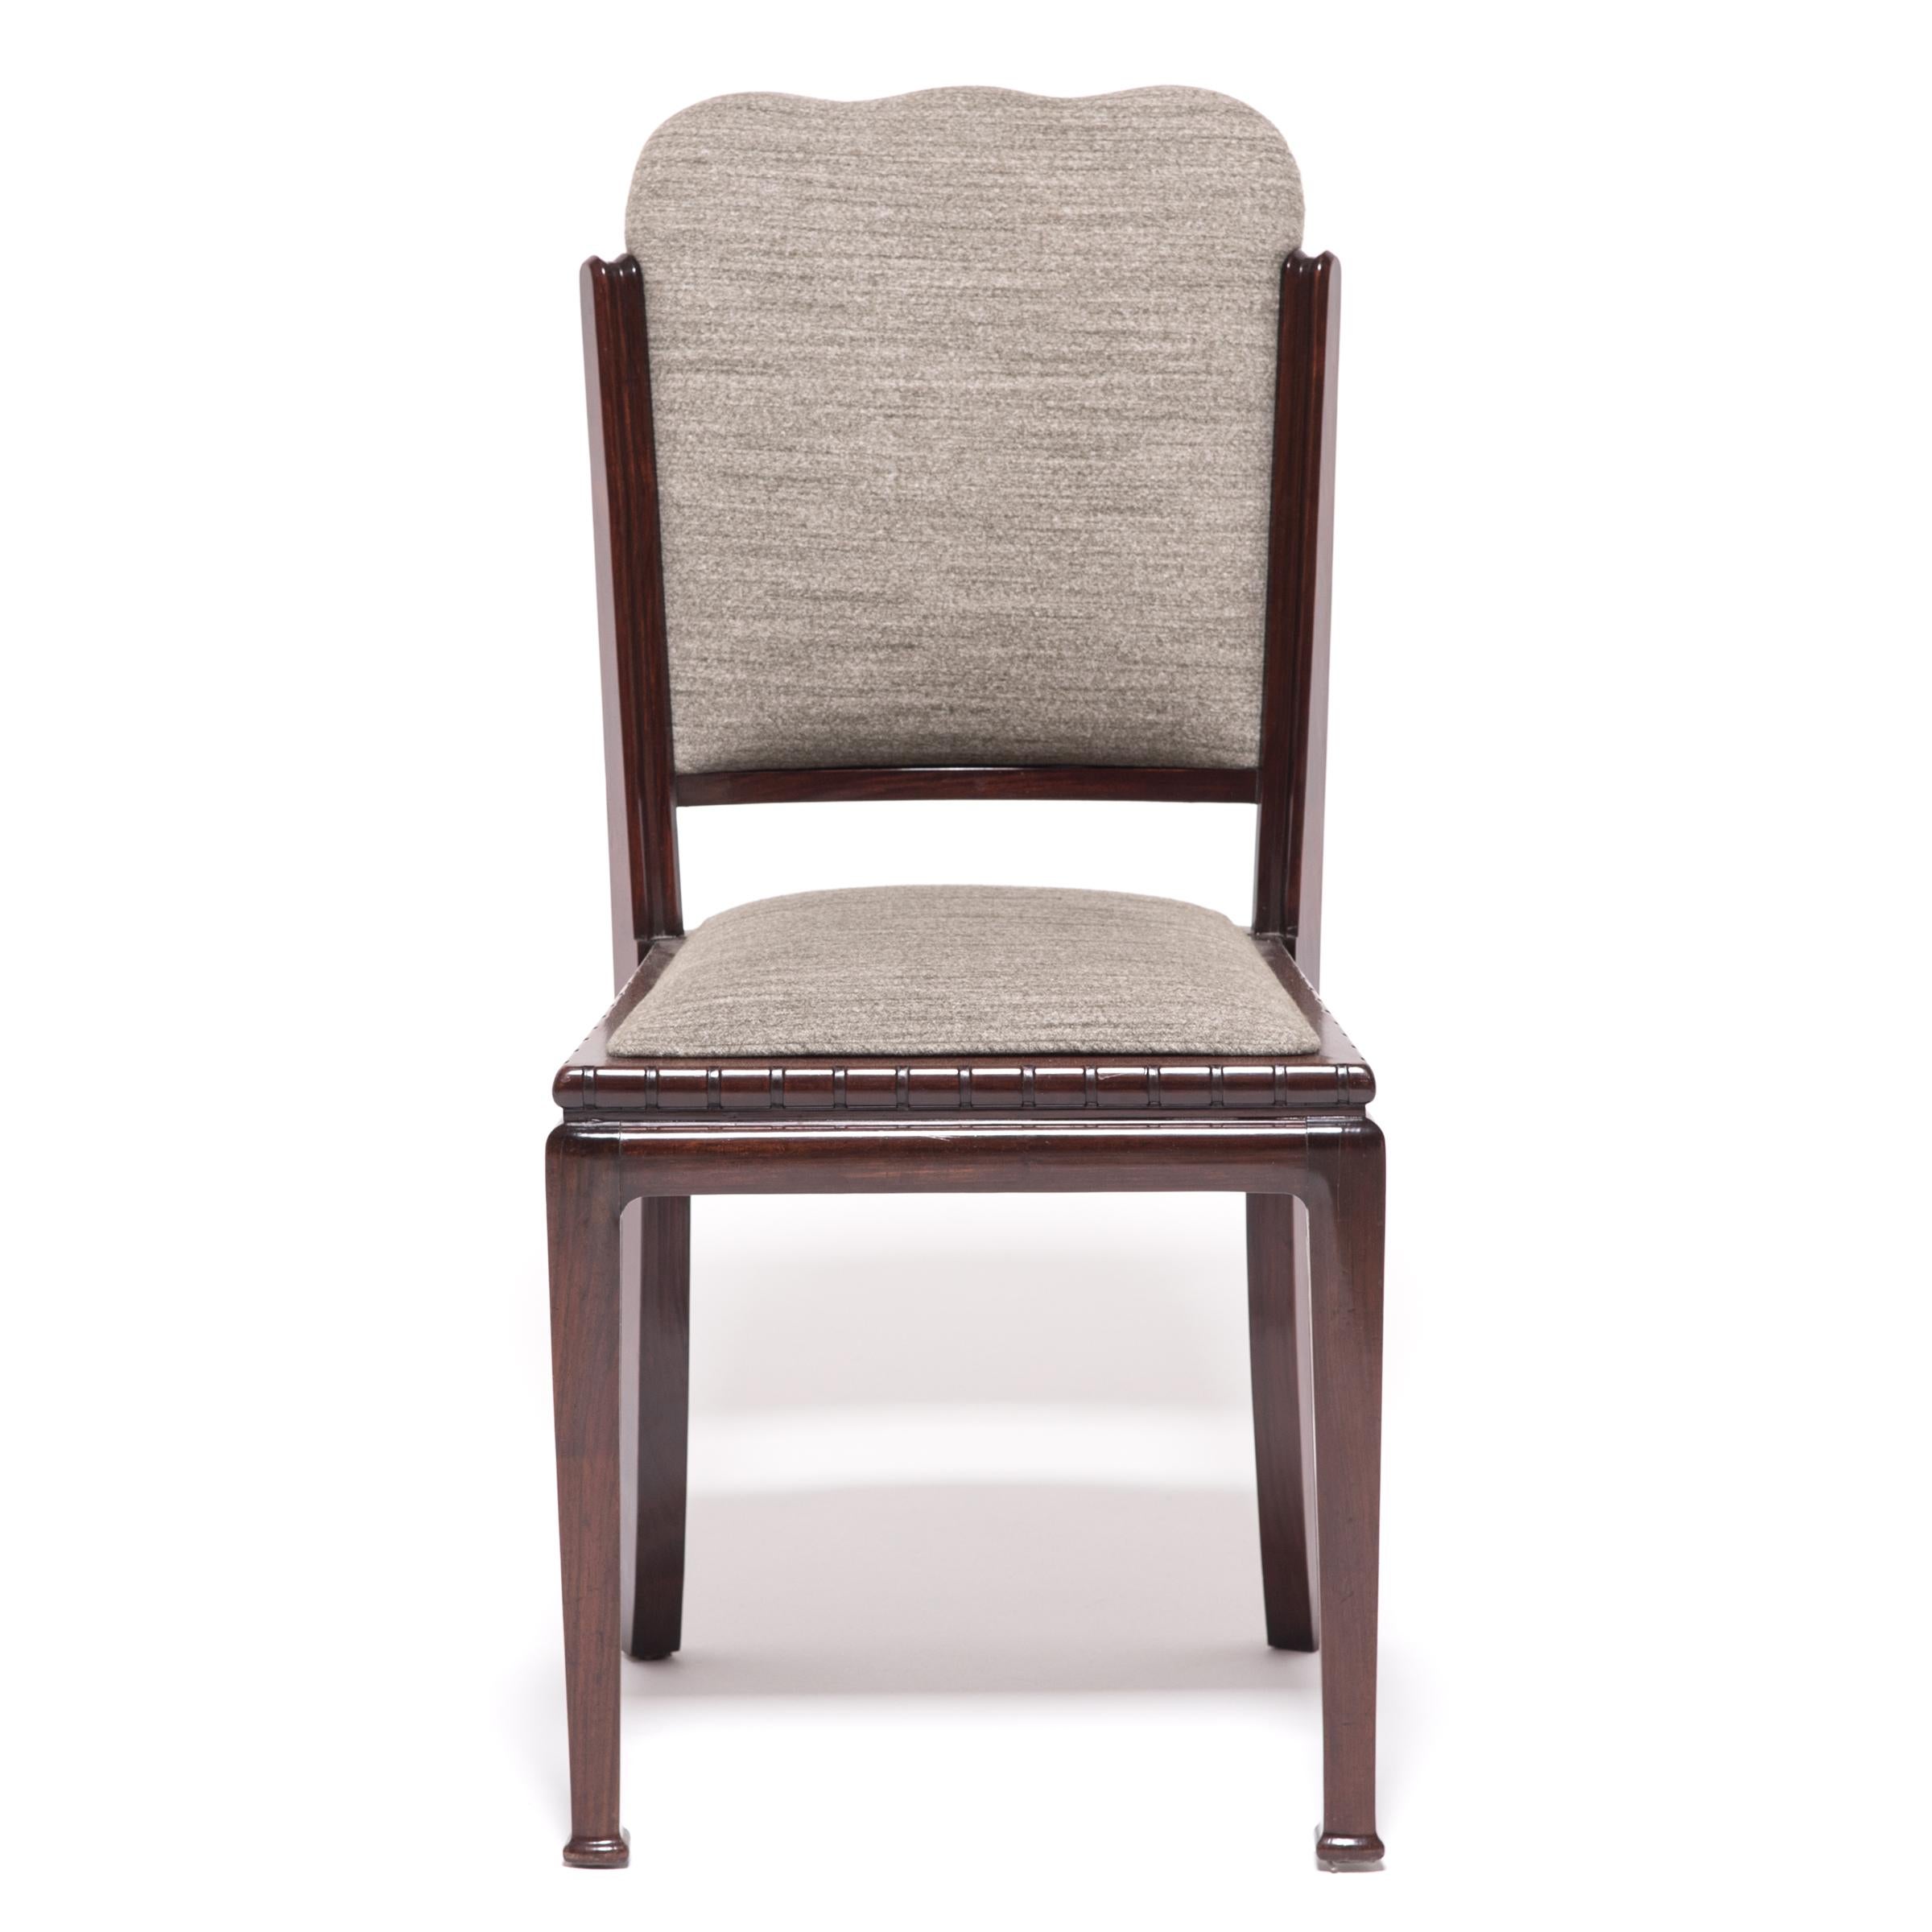 Dieser einzigartige Stuhl, der in den 1920er Jahren hergestellt wurde, um den weltweiten Hunger nach Art Déco zu stillen, kombiniert den stromlinienförmigen Stil der Epoche mit einer klassischen chinesischen Ästhetik. Der schöne Hartholzrahmen